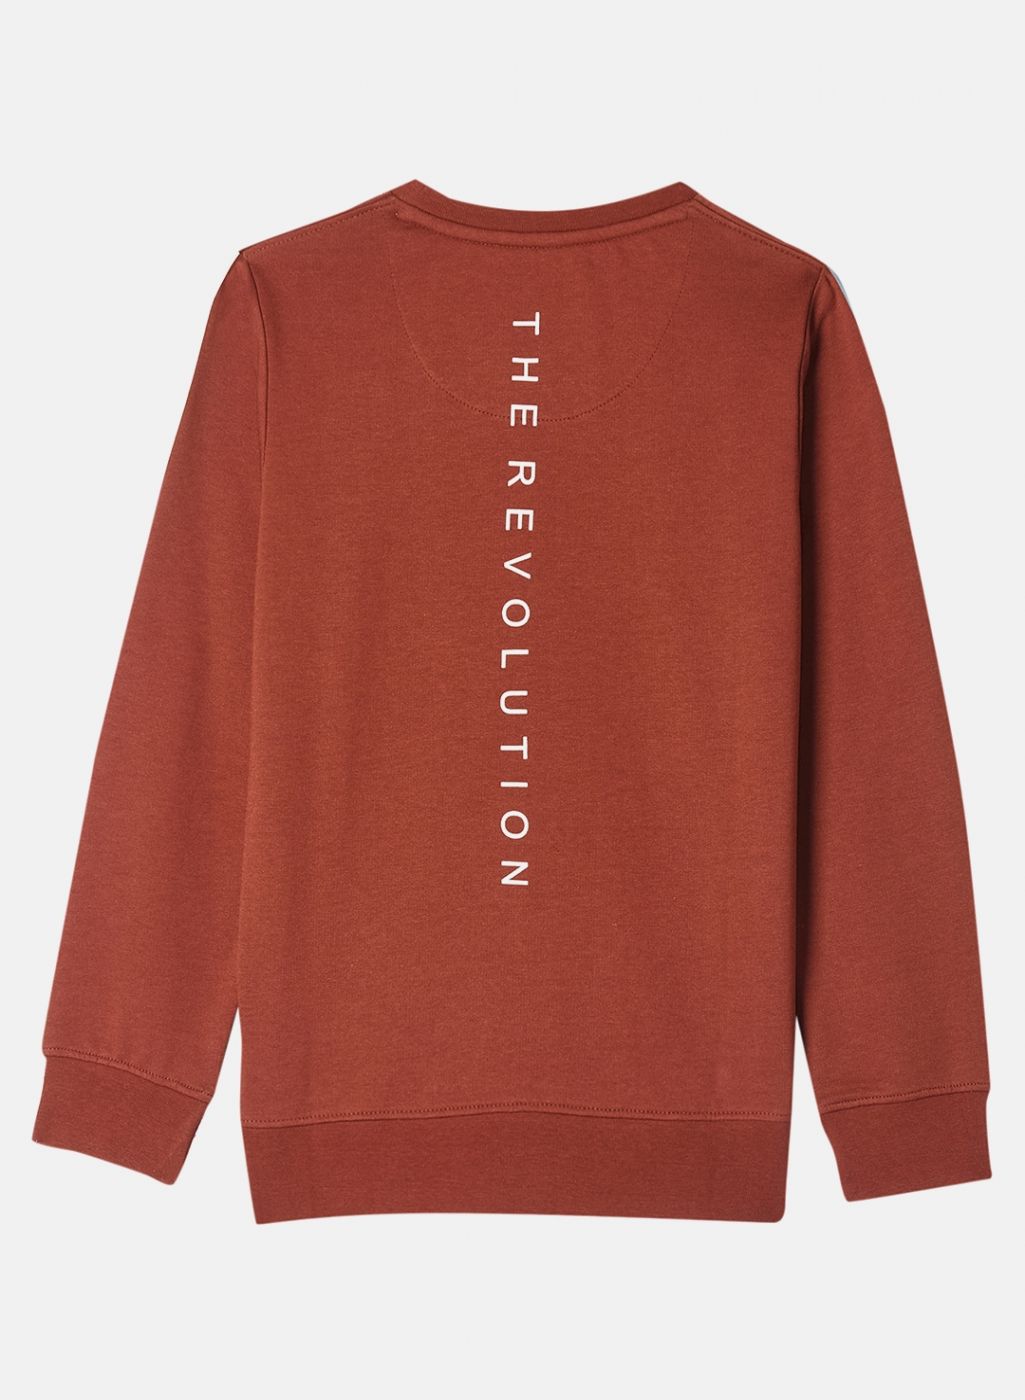 Boys Brown Printed Sweatshirt